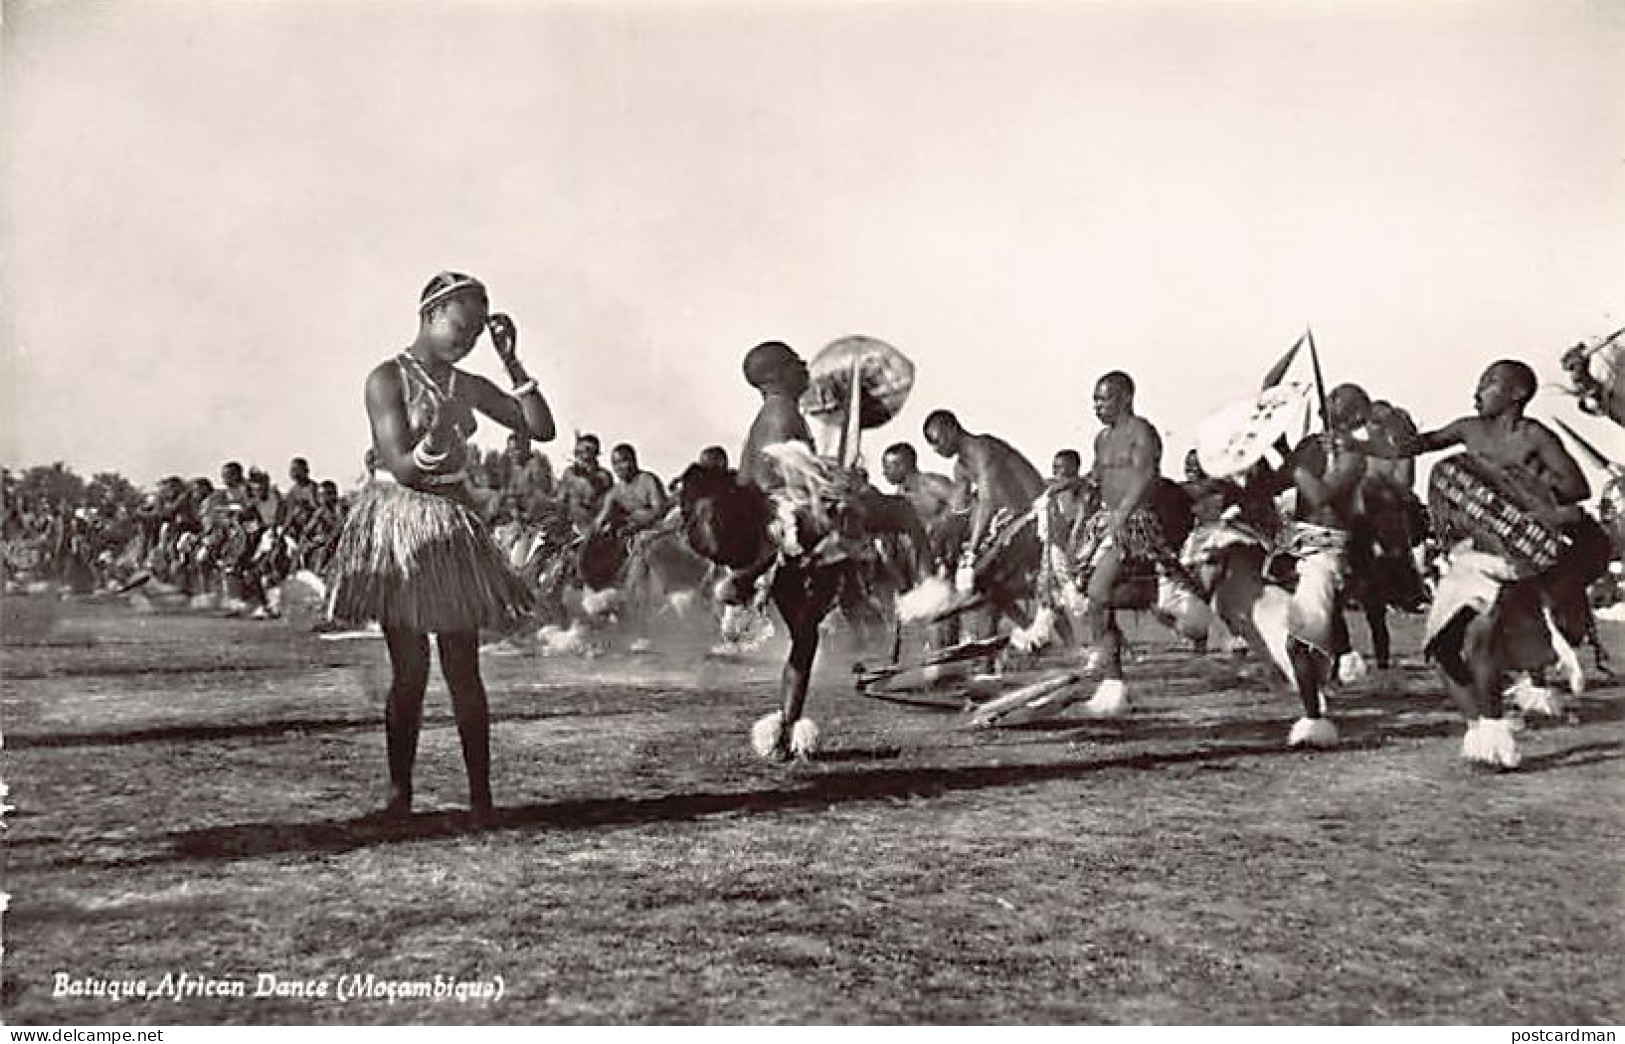 MOÇAMBIQUE Mozambique - Batuque African Dance - REAL PHOTO - Ed. / Publ. M. S. & Co. 15 - Mozambico